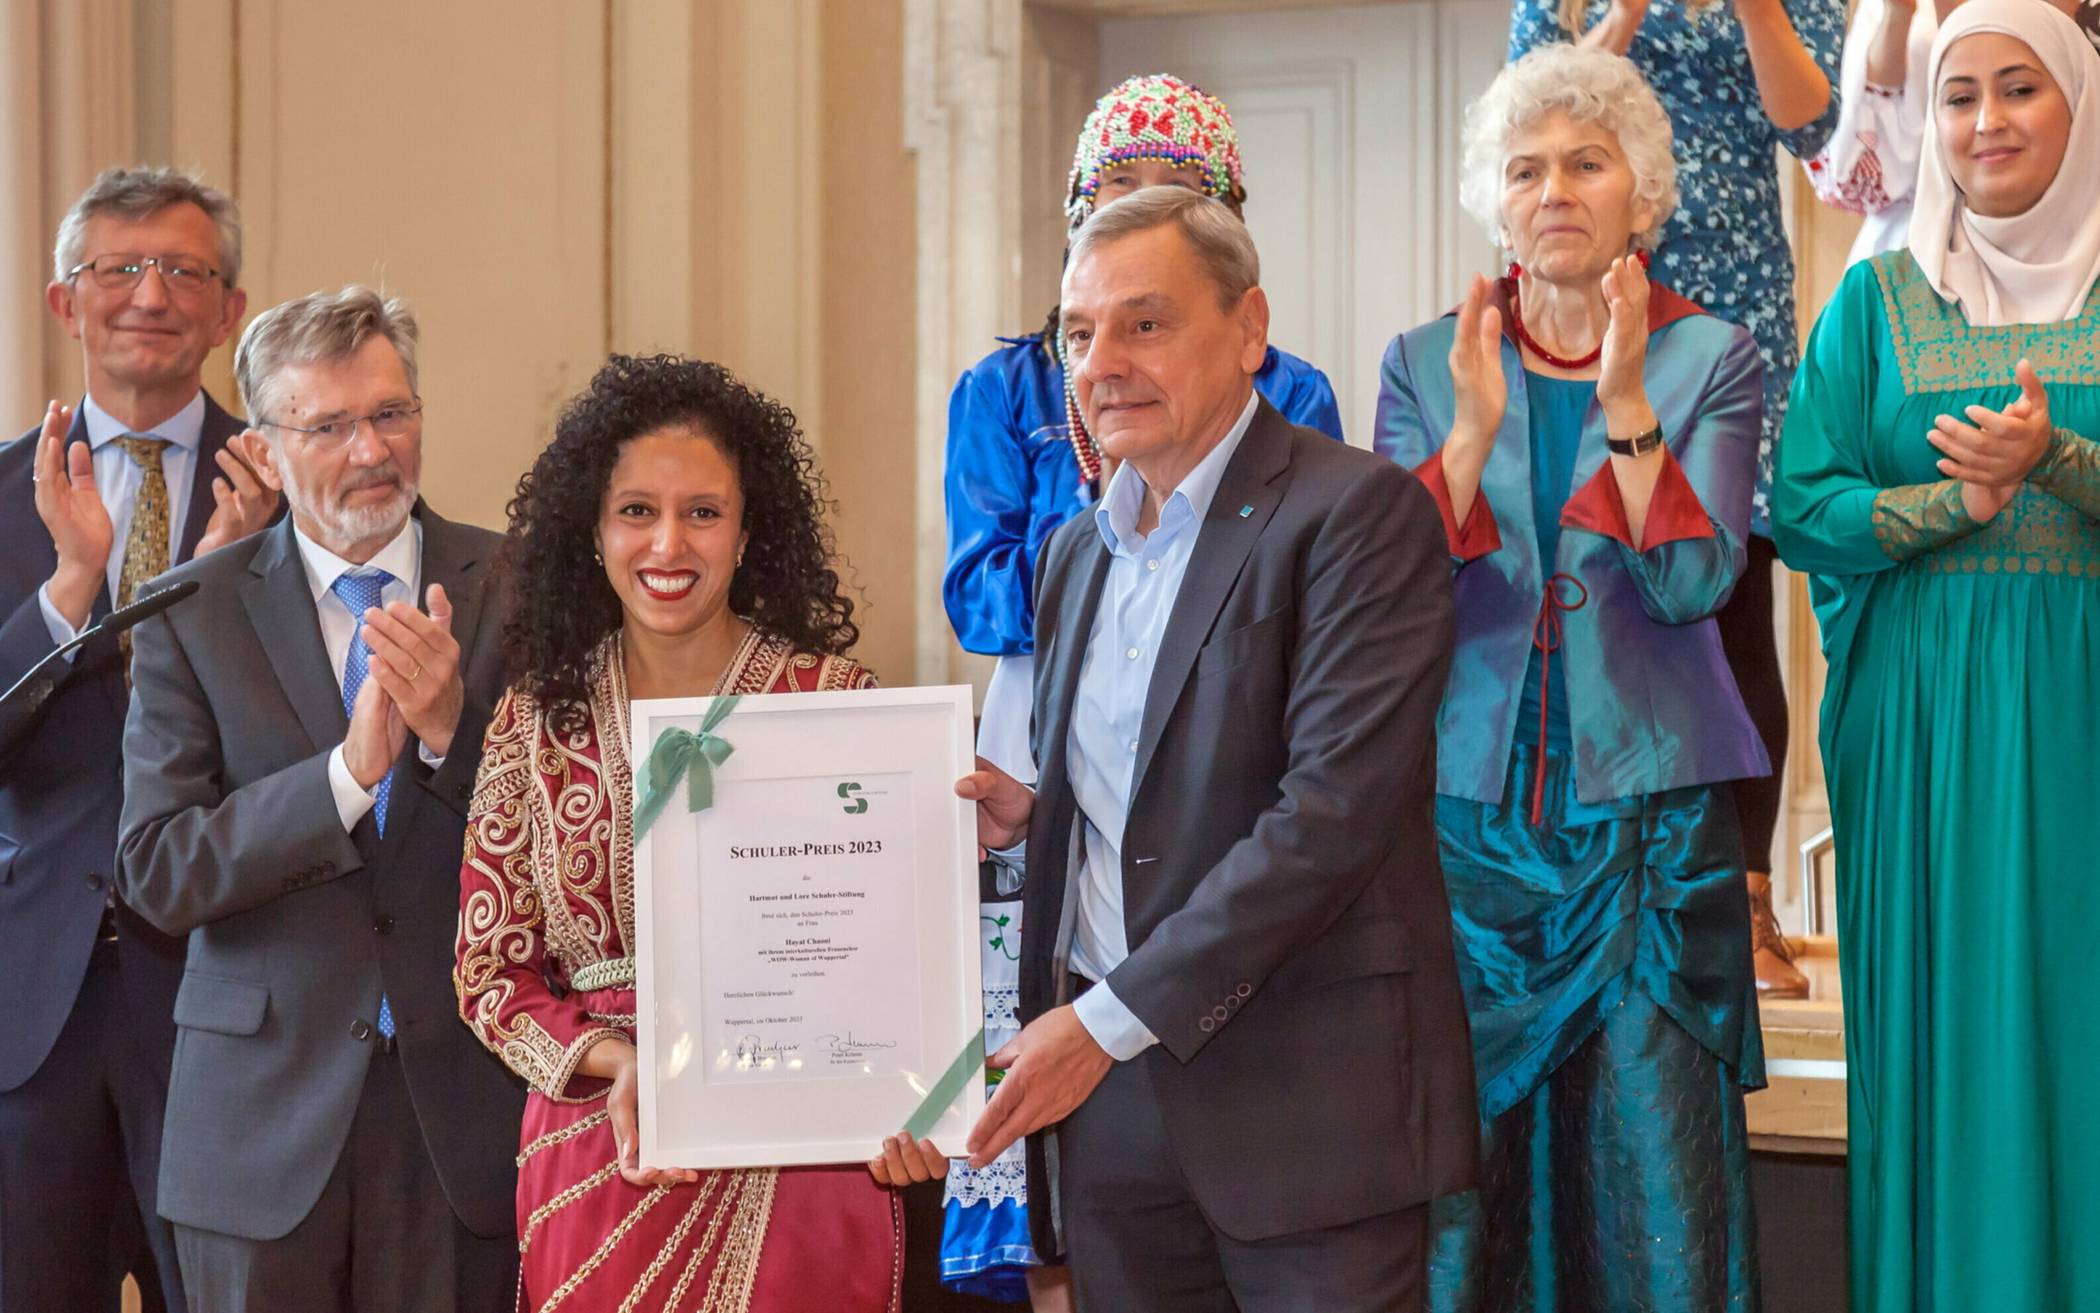 Hayat Chaoui erhielt den Preis der Schuler-Stiftung